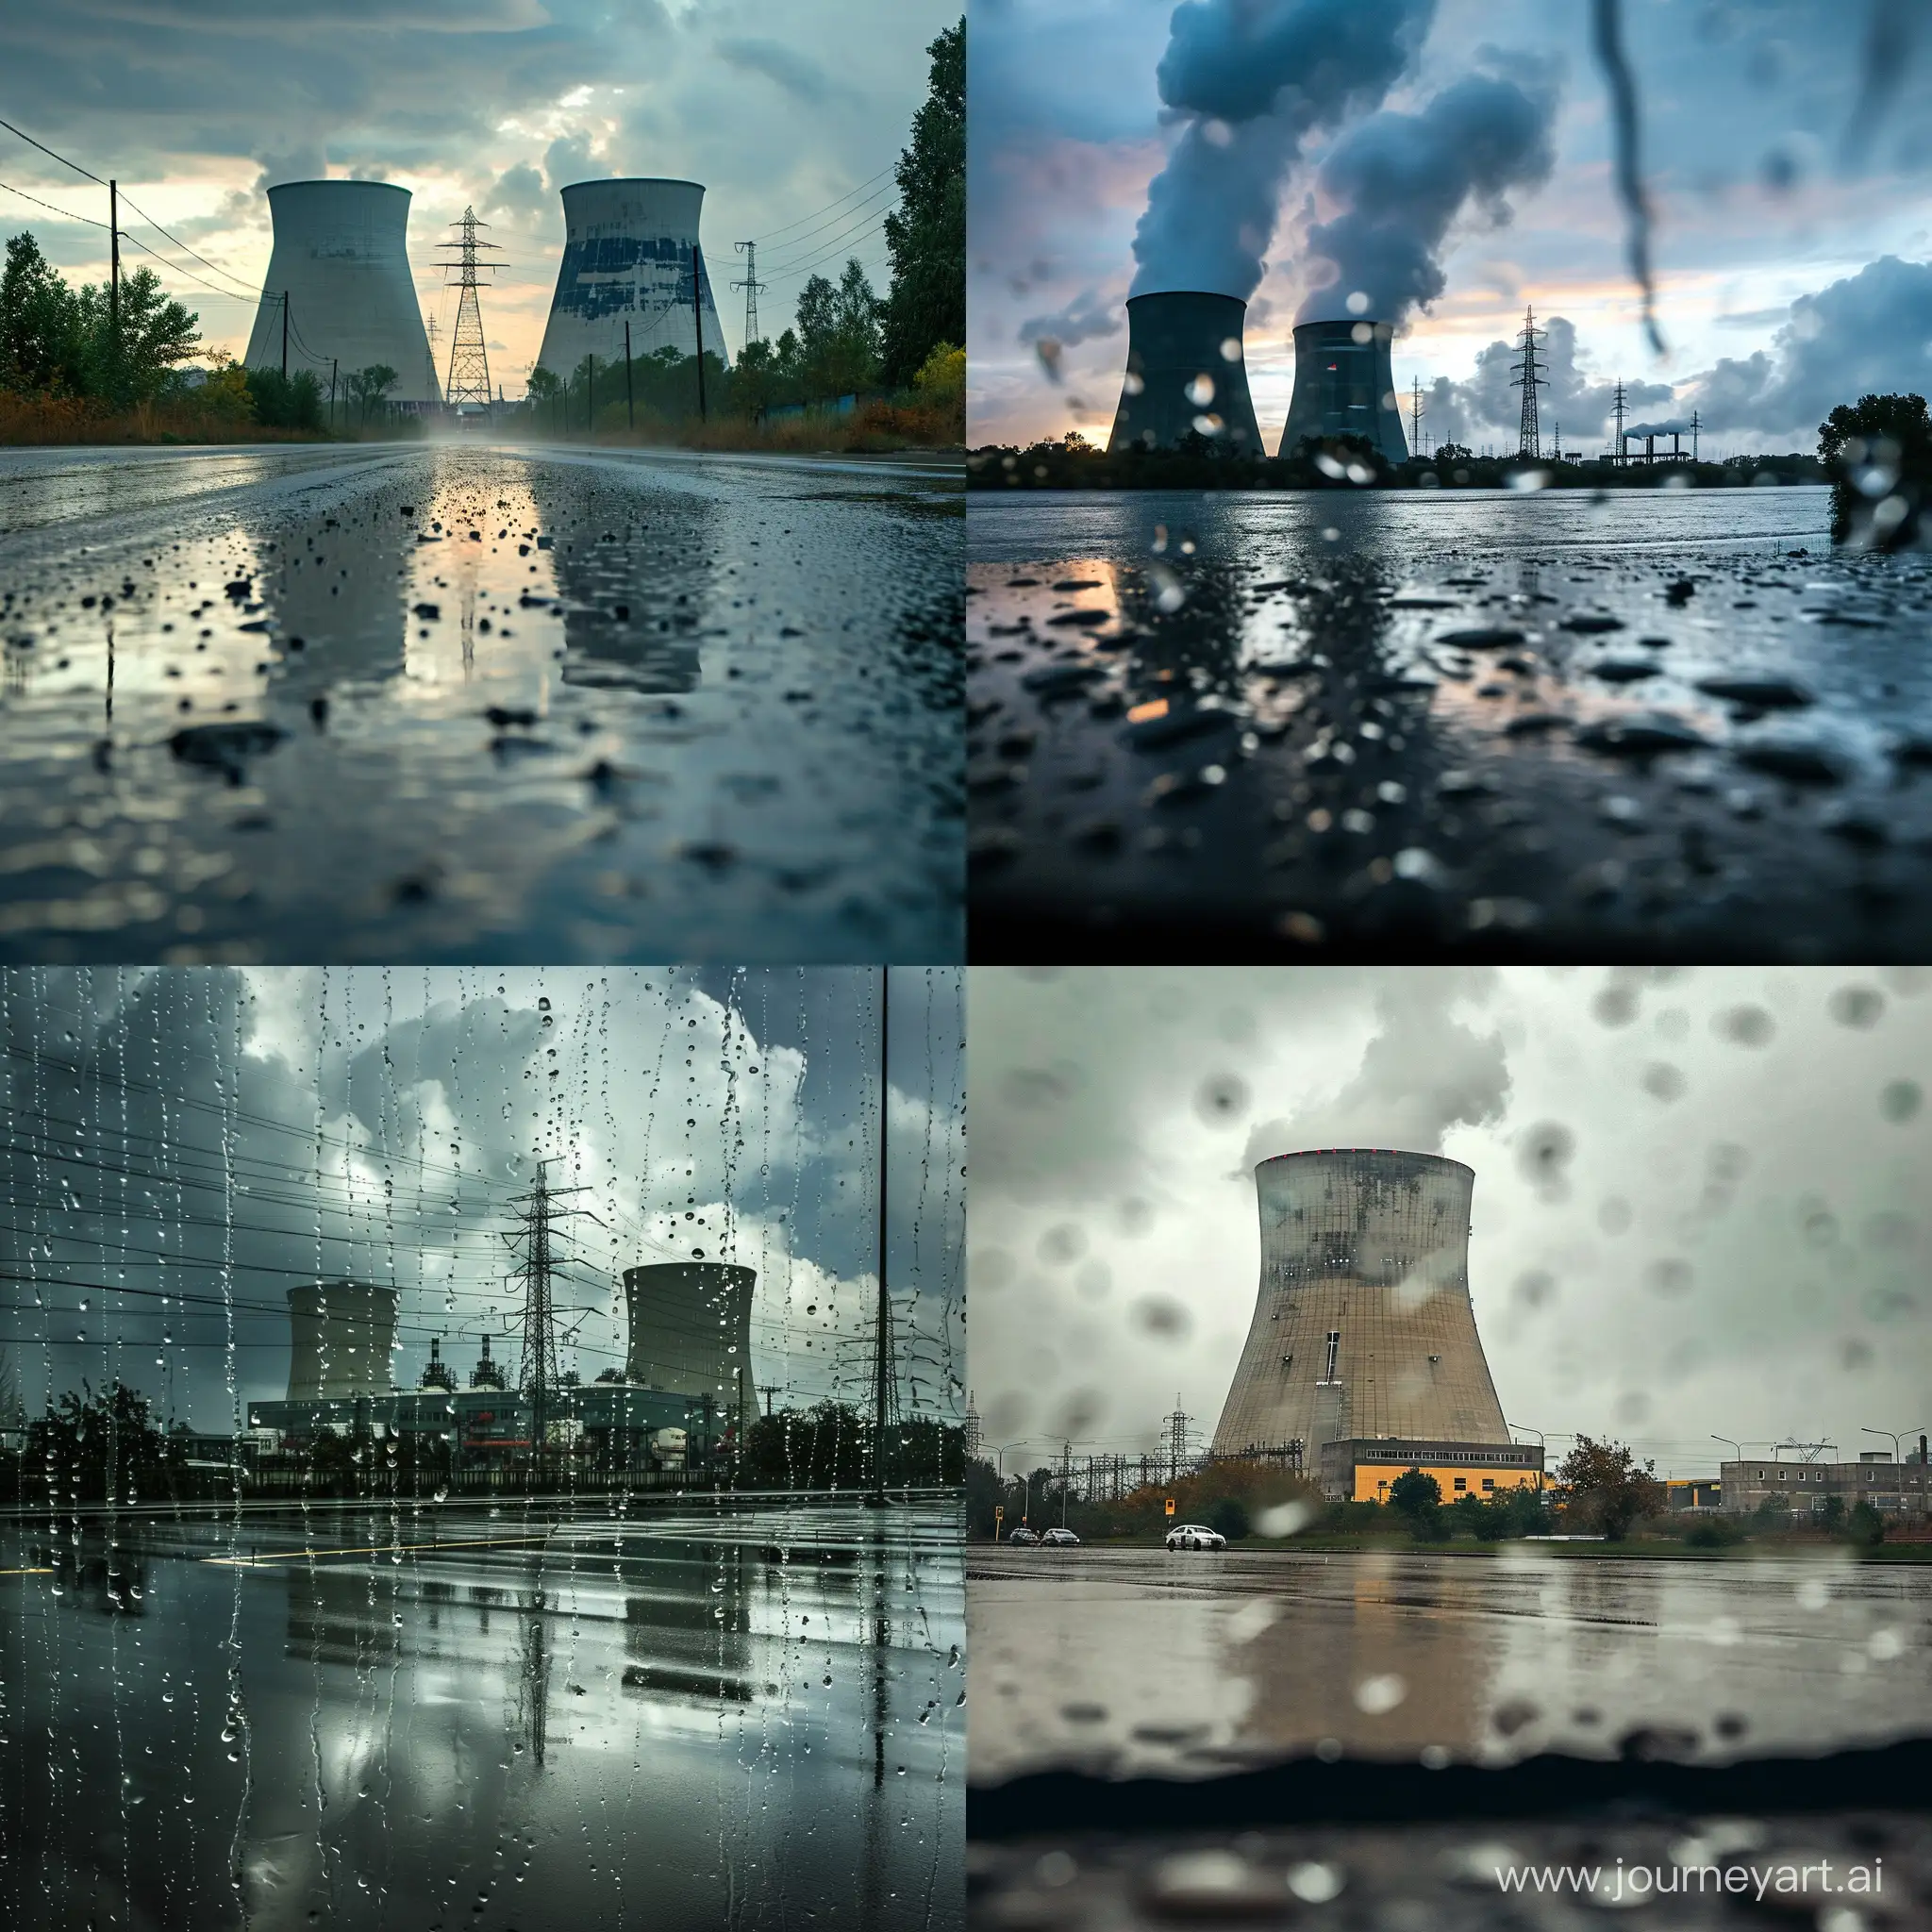 une photo d'une central nucléaire entrain d'exposé à cause de la pluie